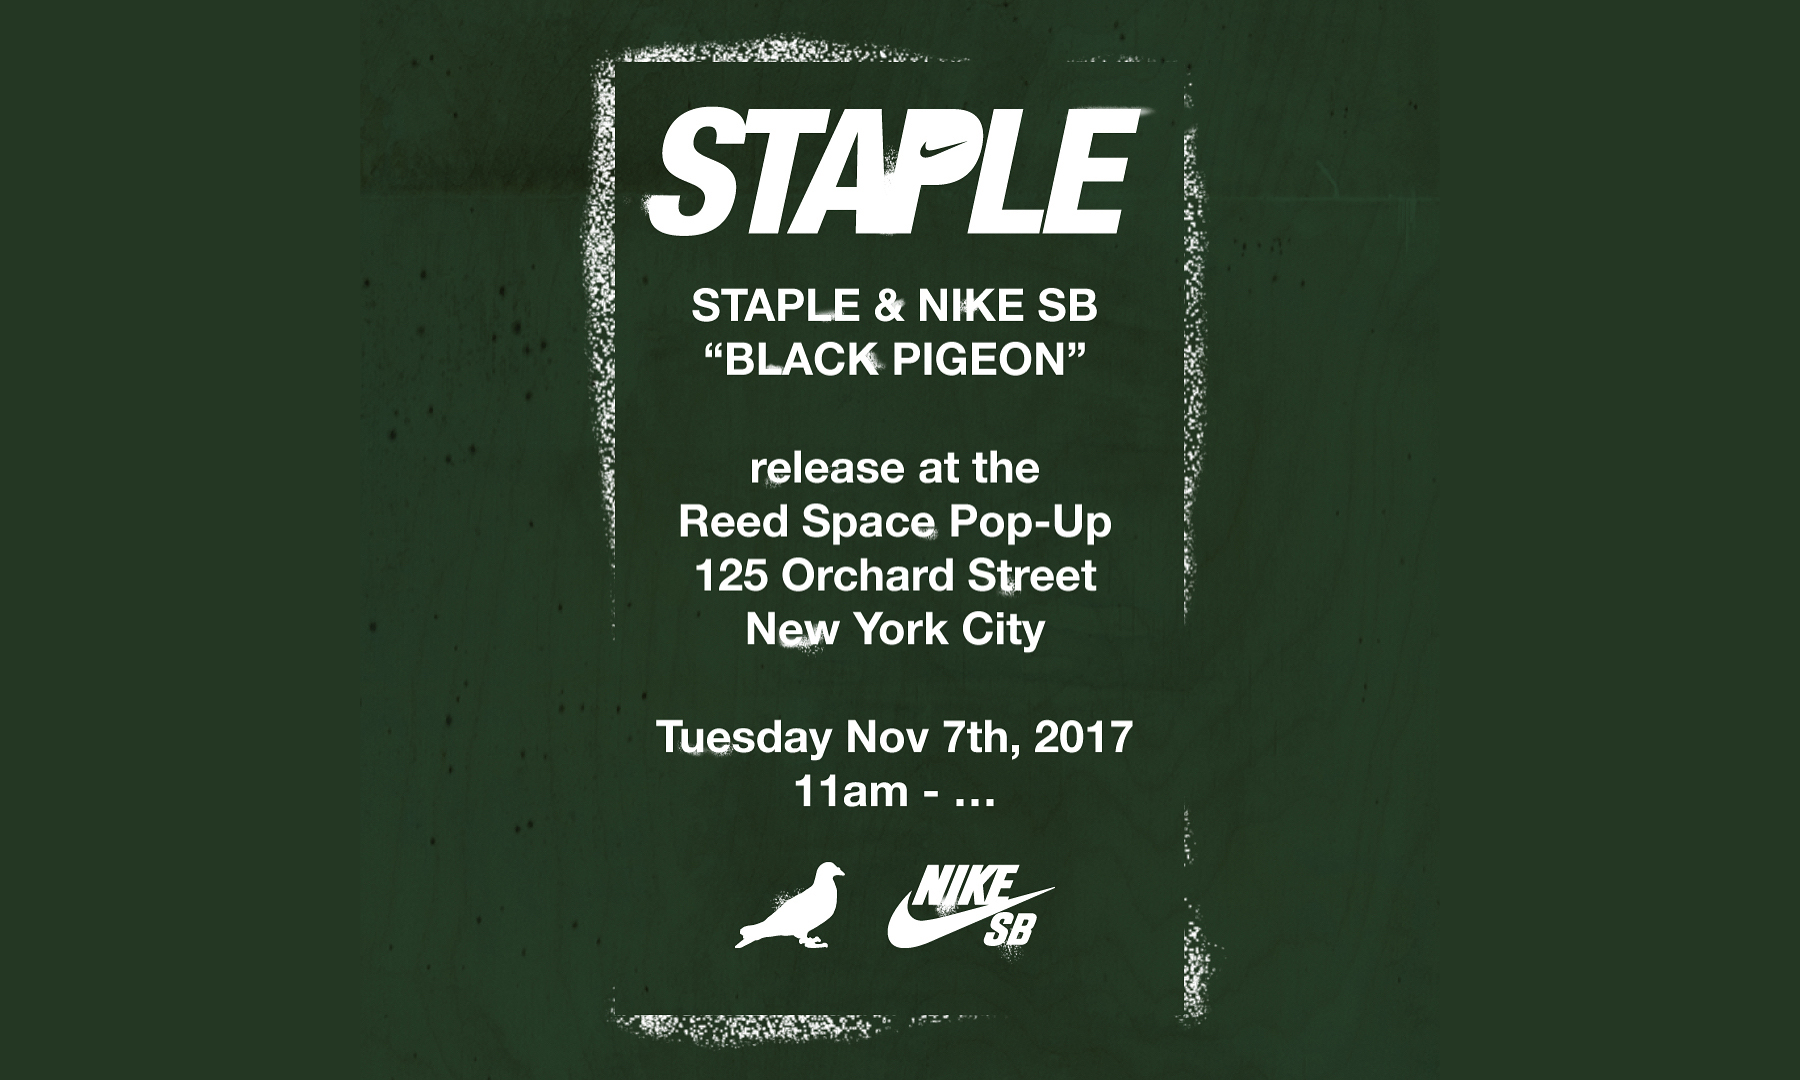 黑鸽子归来！Staple x Nike SB 即将发售